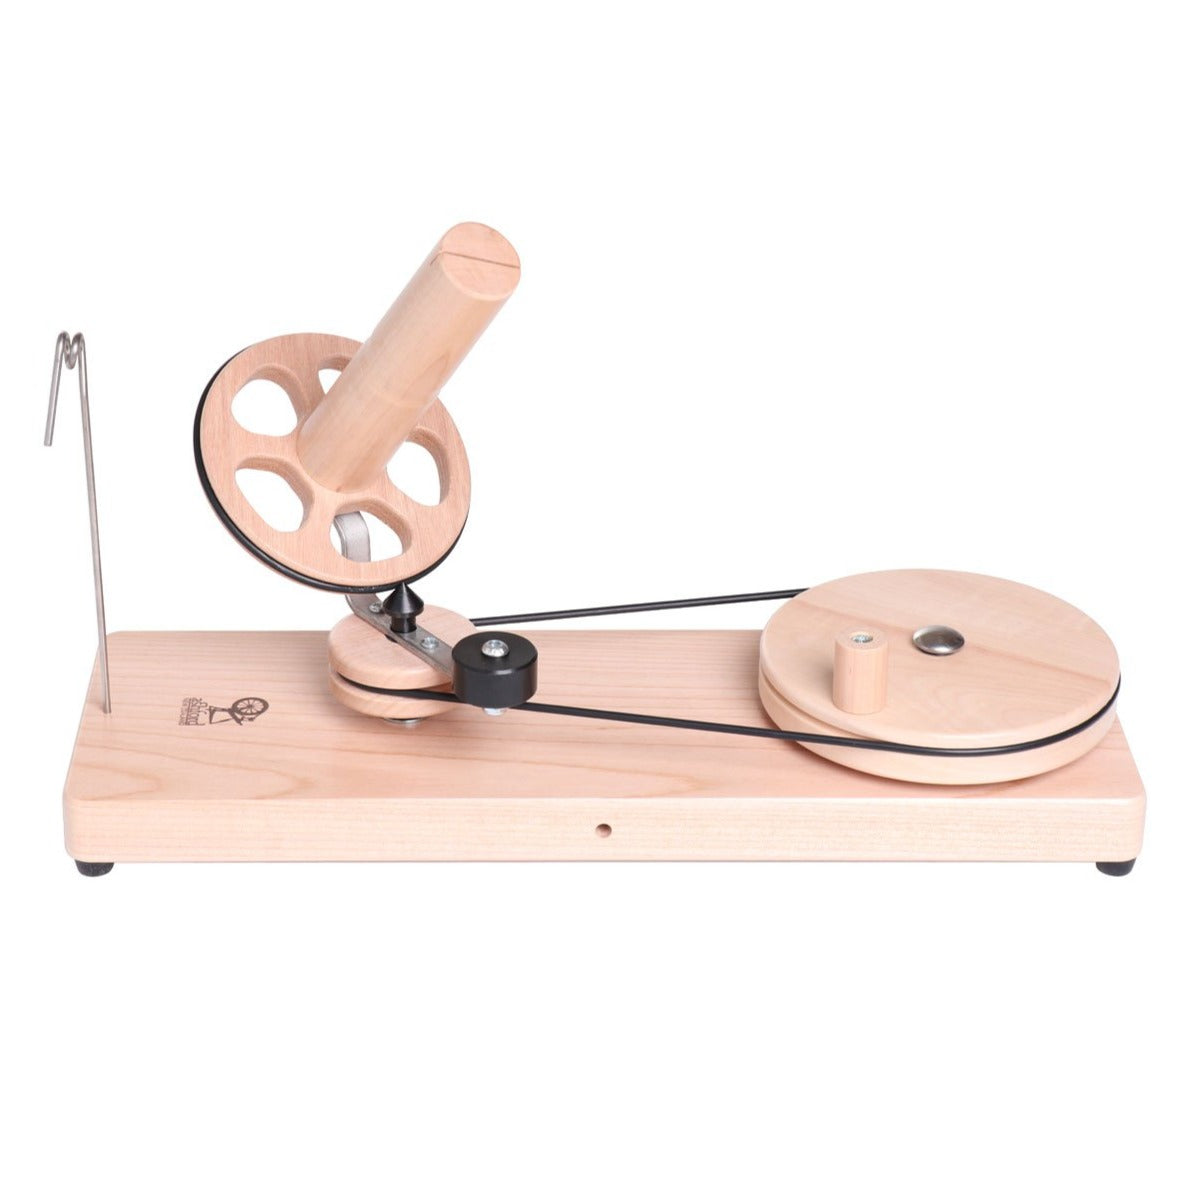 Hand operated Large Yarn Fiber/Wool Ball Winding Machine Professional USA